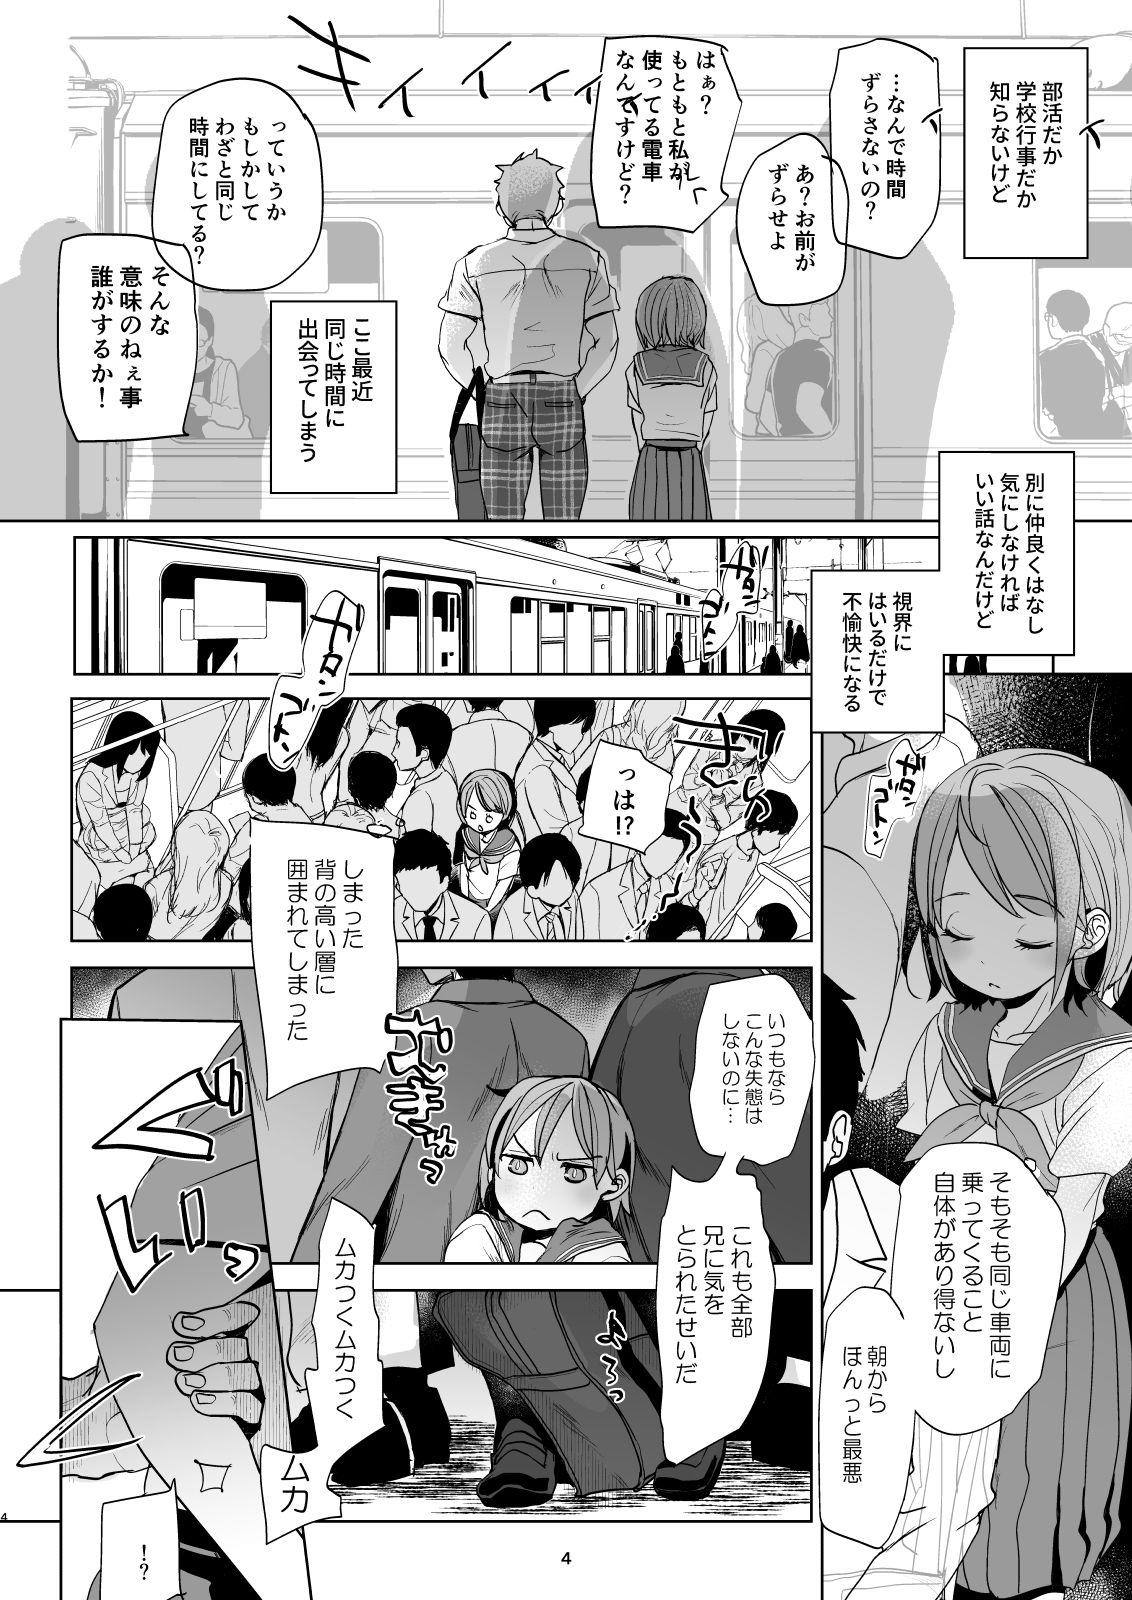 Gostoso Watashi to Ani no Nichijou 4 Jerking Off - Page 3